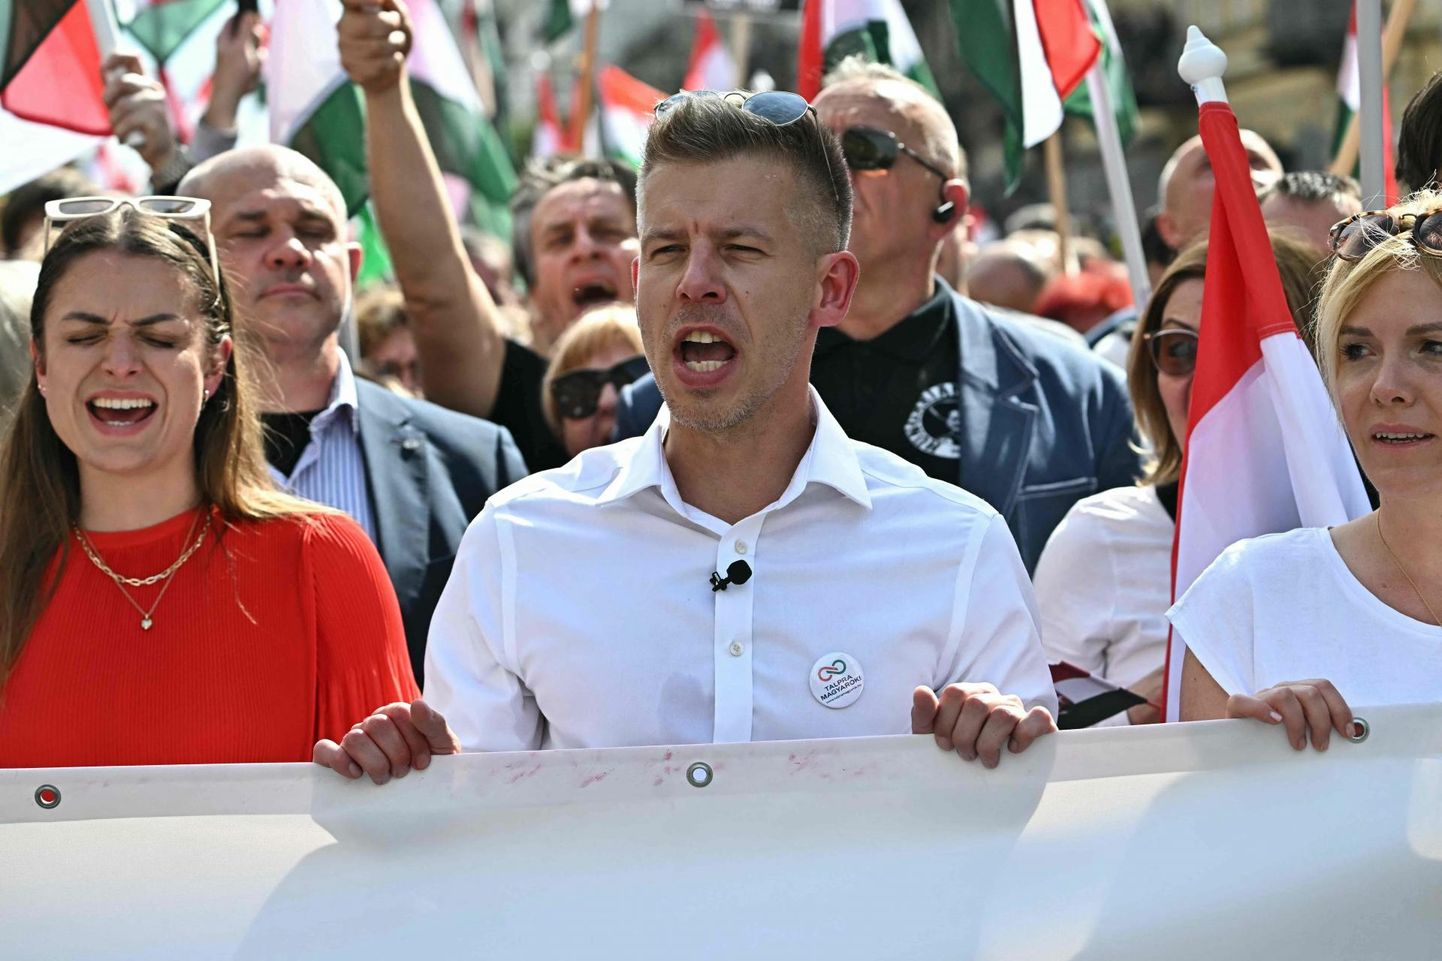 Paari kuuga Ungari valitsusvastase leeri käilakujuks kerkinud jurist ja ärimees Peter Magyar (keskel) laupäeval Budapestis seni suurimal peaminister Viktor Orbáni vastasel meeleavaldusel.